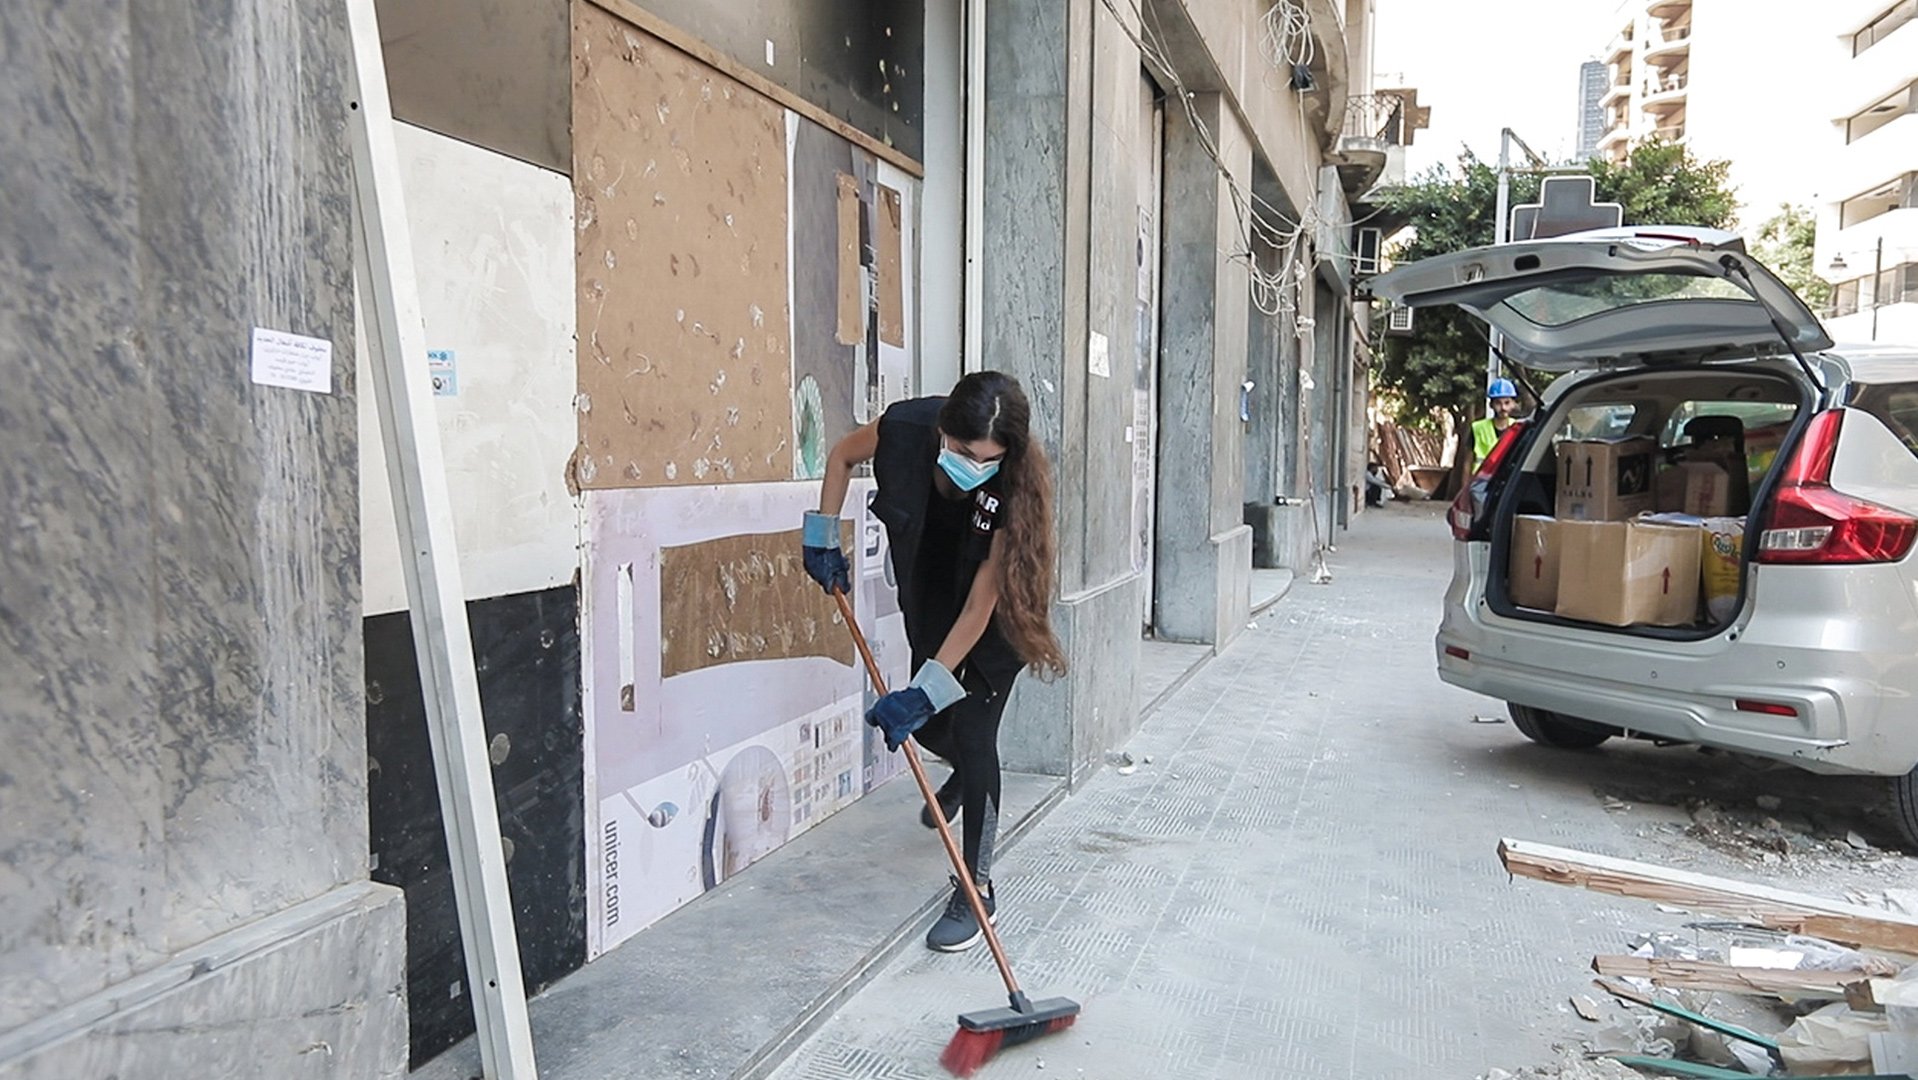 War Child-medewerkers komen in actie als onderdeel van de grootschalige noodhulpoperatie en opruimacties om de gemeenschap in Beiroet, Libanon te onde